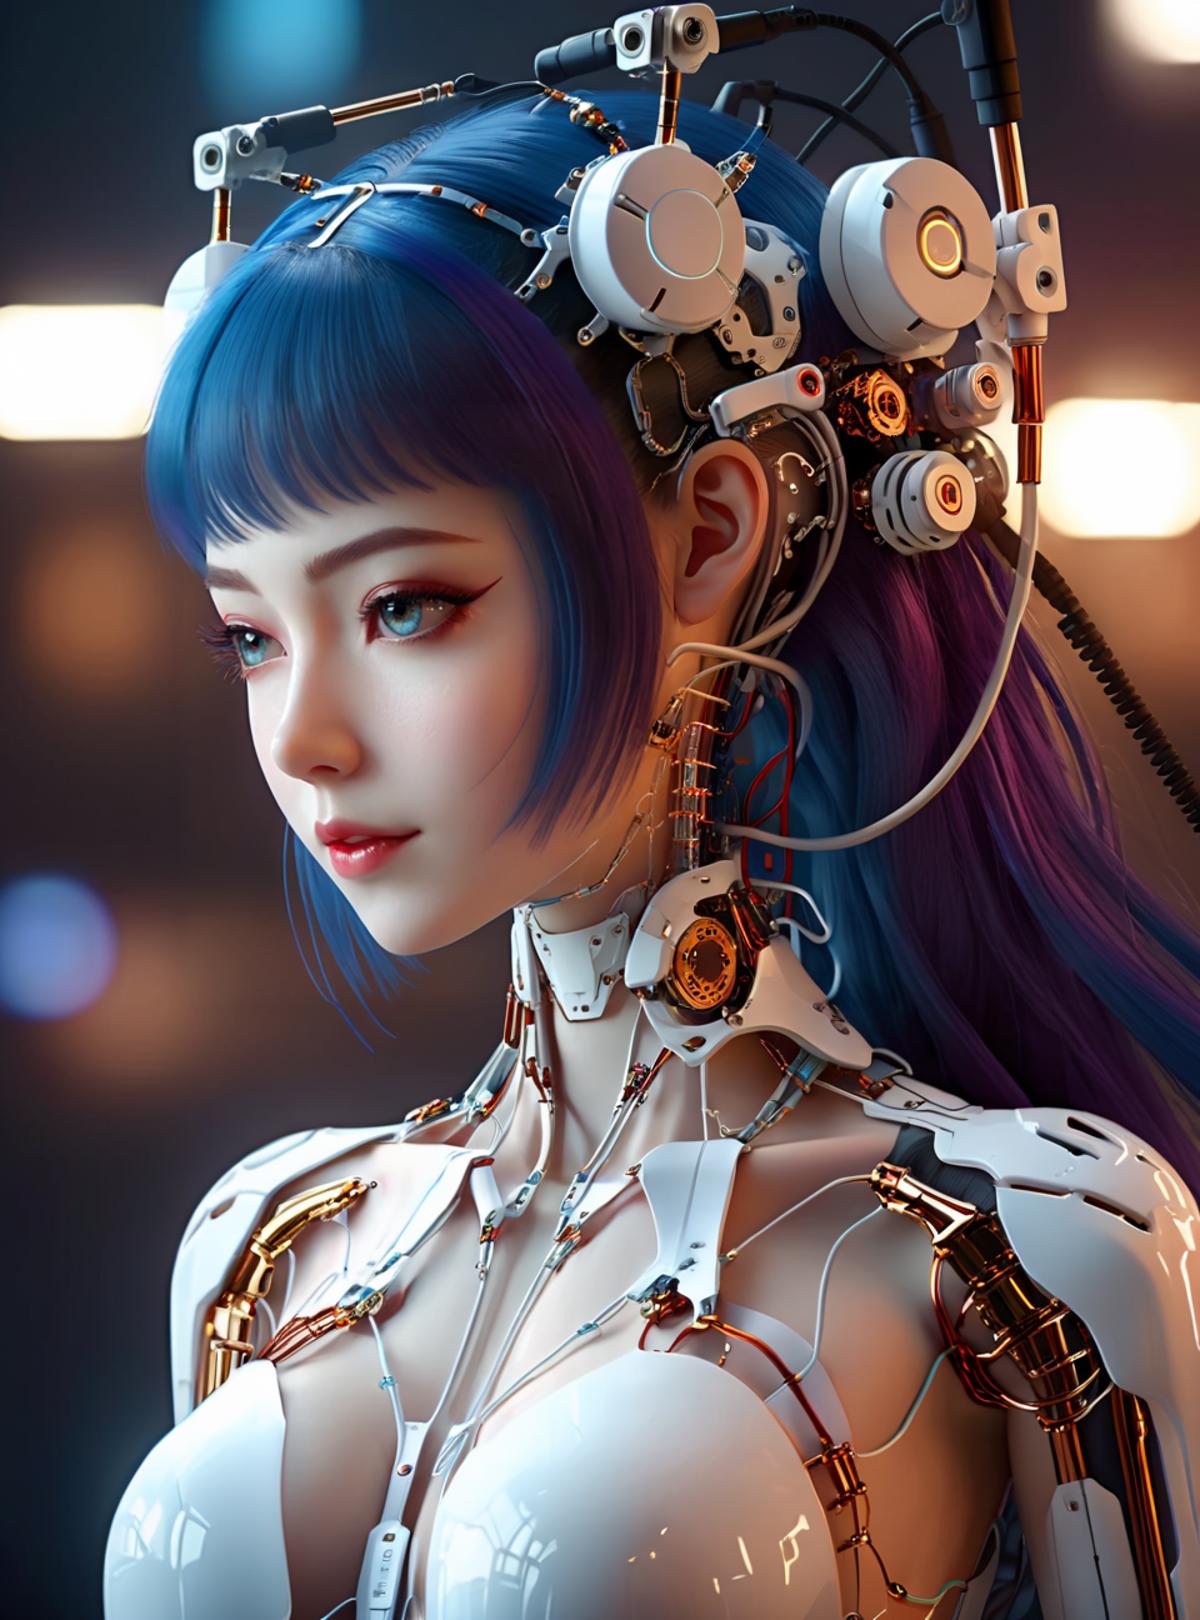 AI model image by kocheng